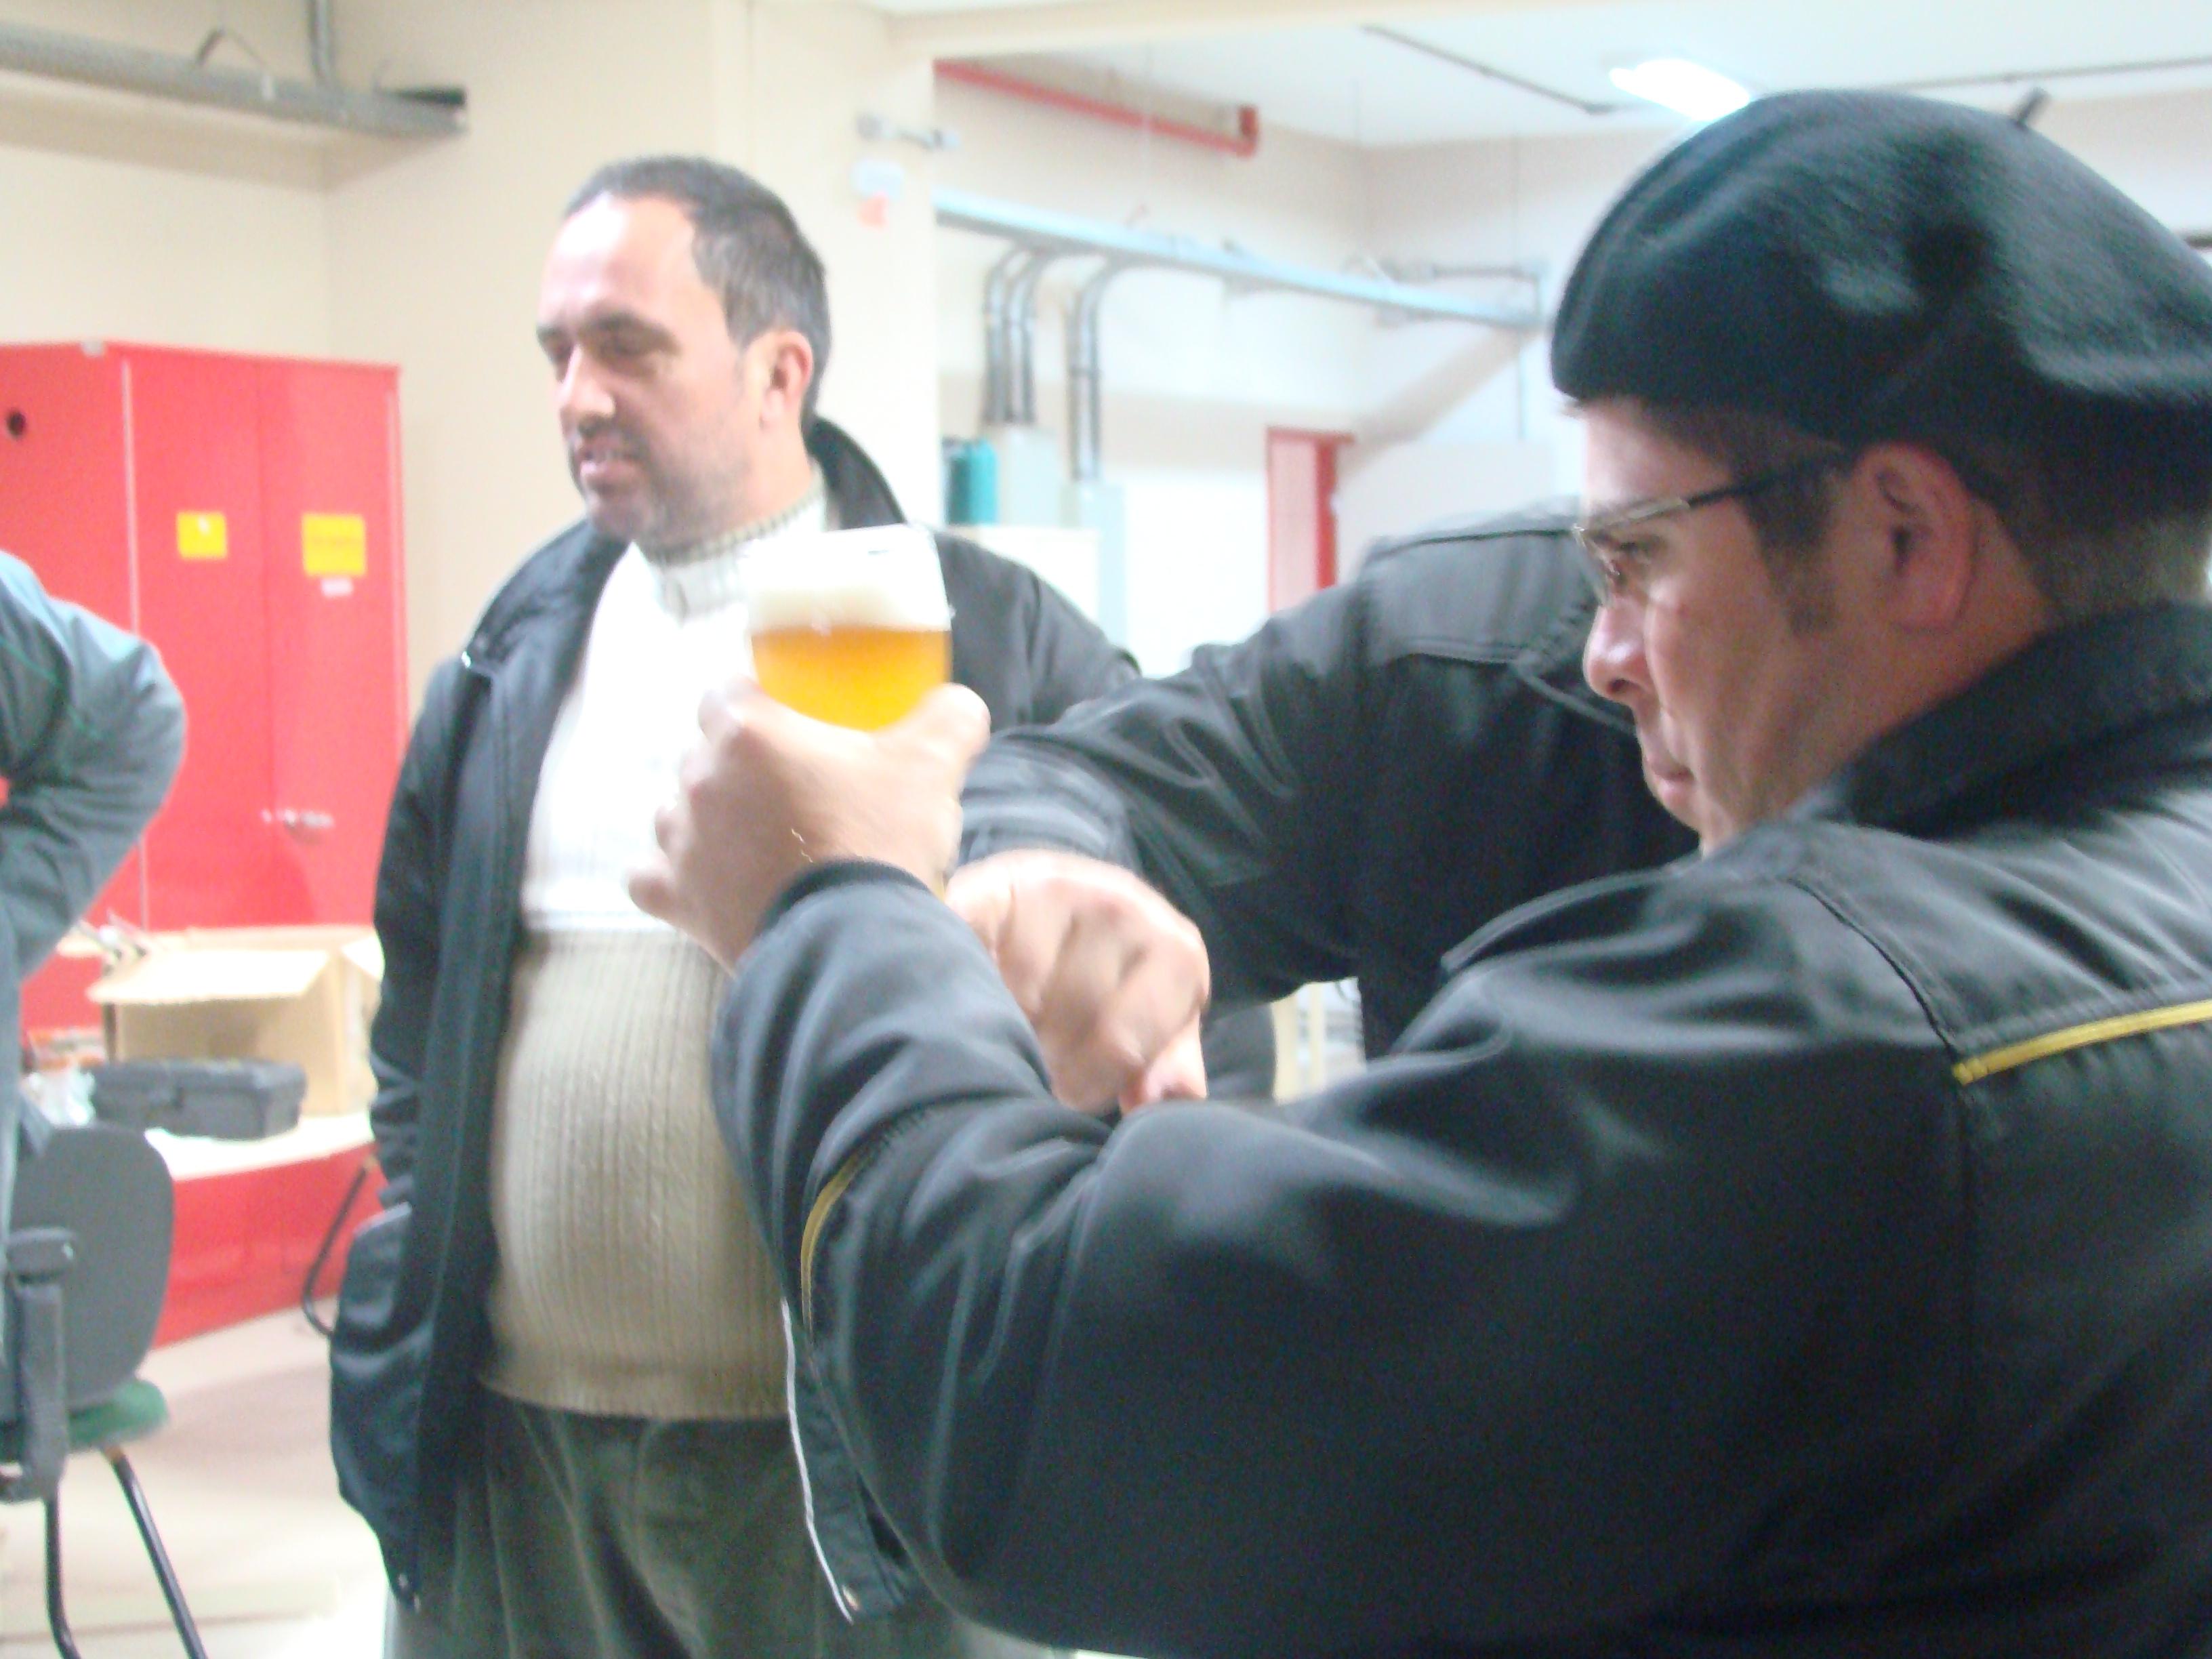 Homem segura copo de cerveja com uma das mãos e a observa. Outro homem figura o fundo da foto.